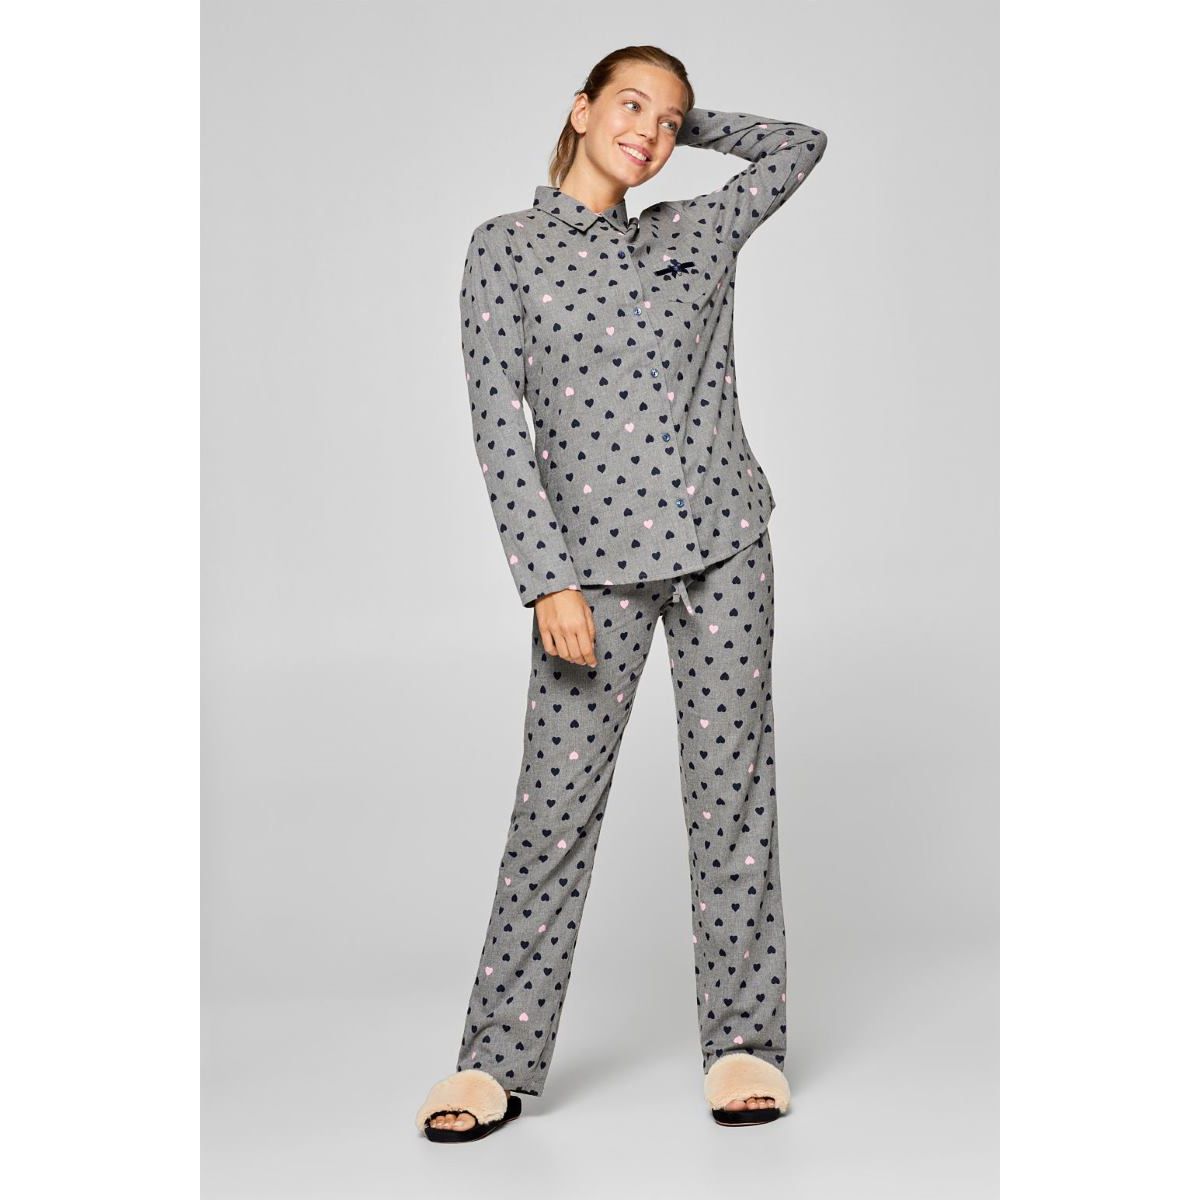 Esprit doorknoop pyjama hartjes | Bestel | verzending | Snel in | Online de mooiste pyjama's, nachthemden, ondermode en meer